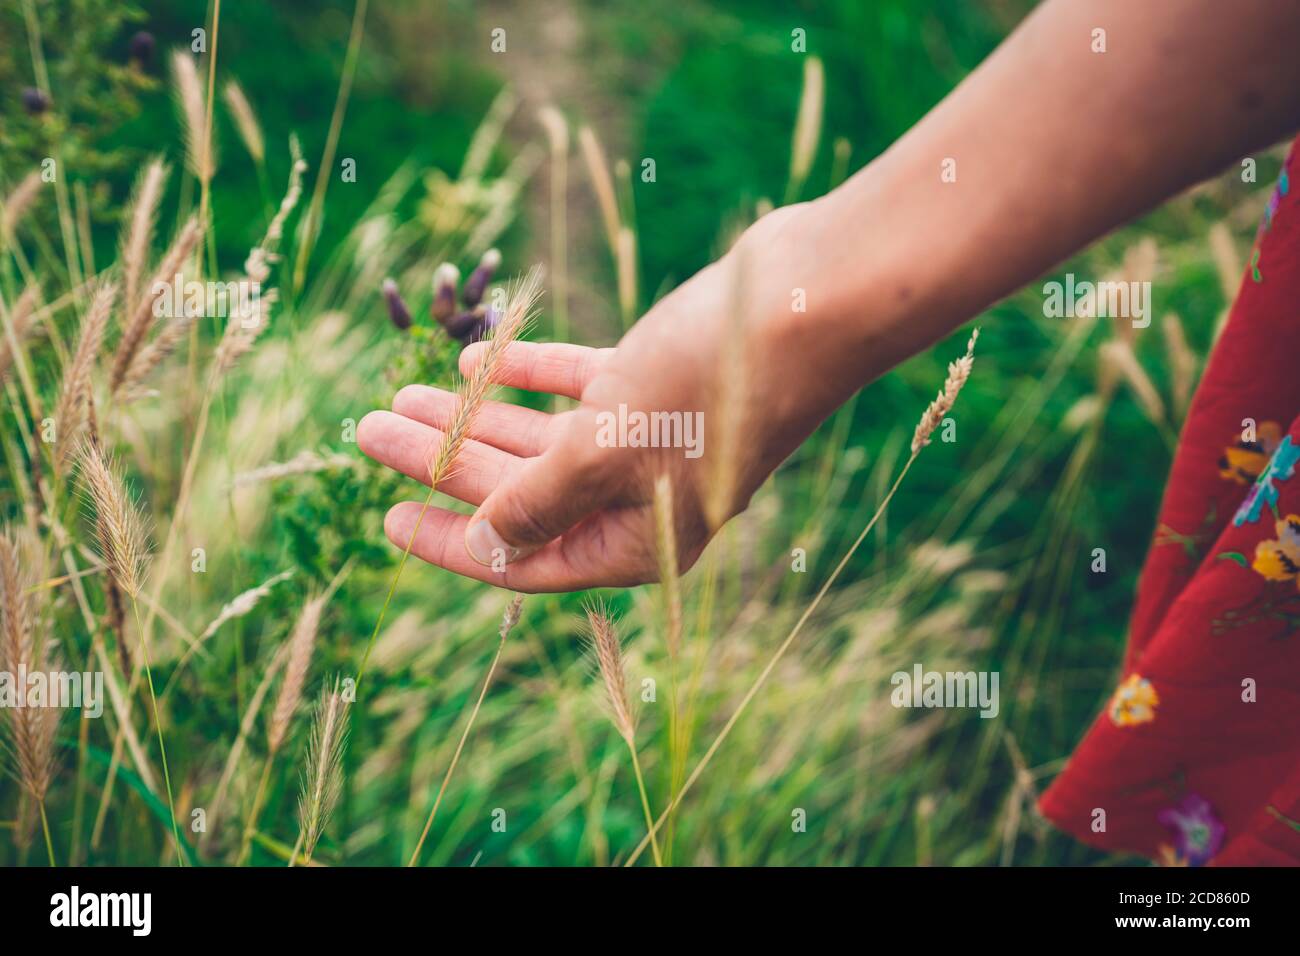 La main d'une jeune femme touche un peu longtemps herbe Banque D'Images